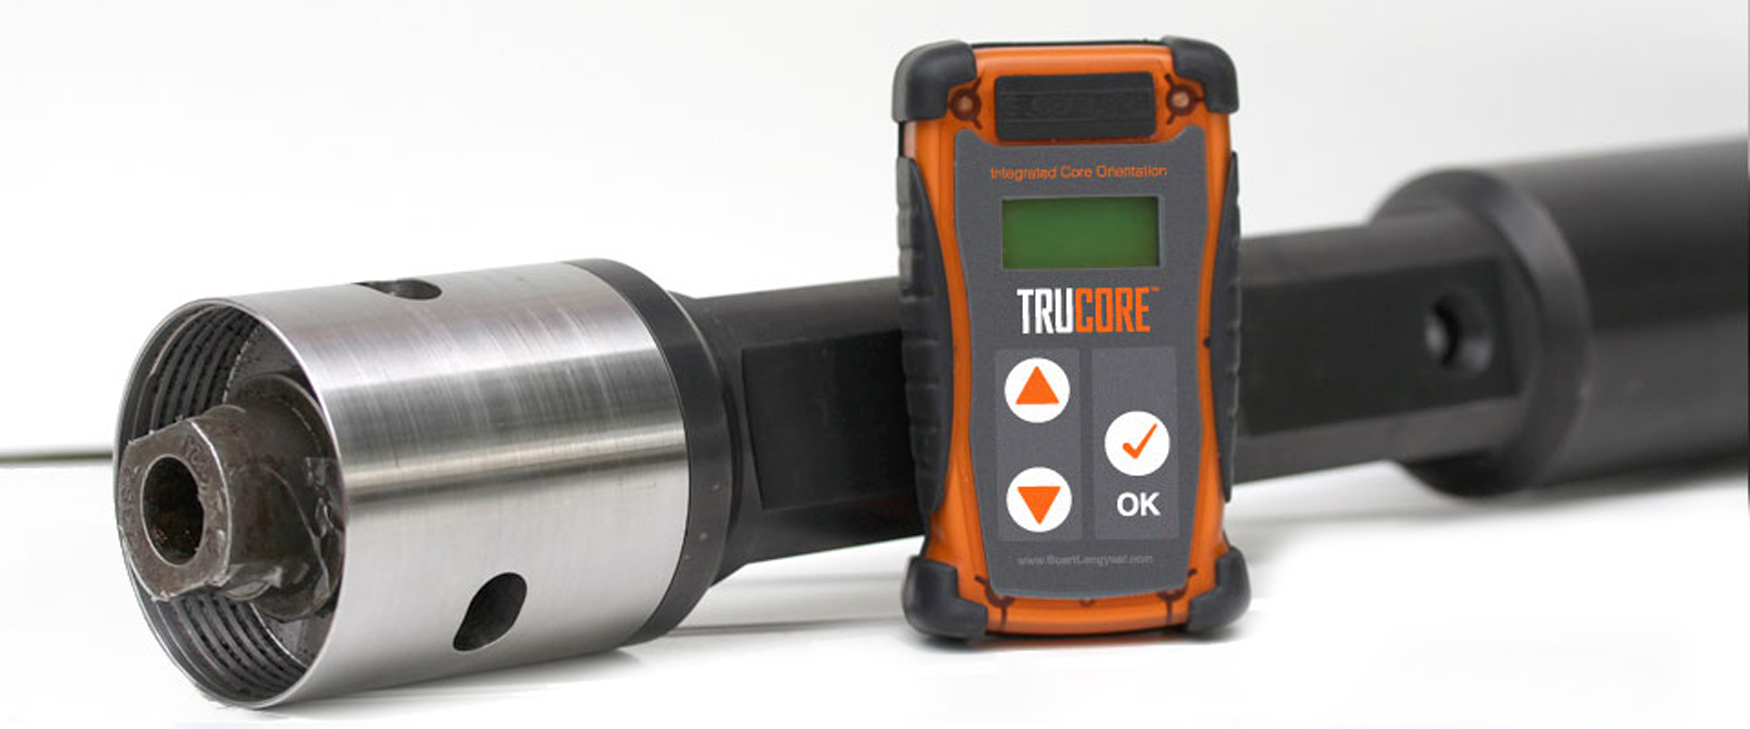 TruCore se compone de dos componentes principales: una herramienta de pozo y un dispositivo manual de medida y control